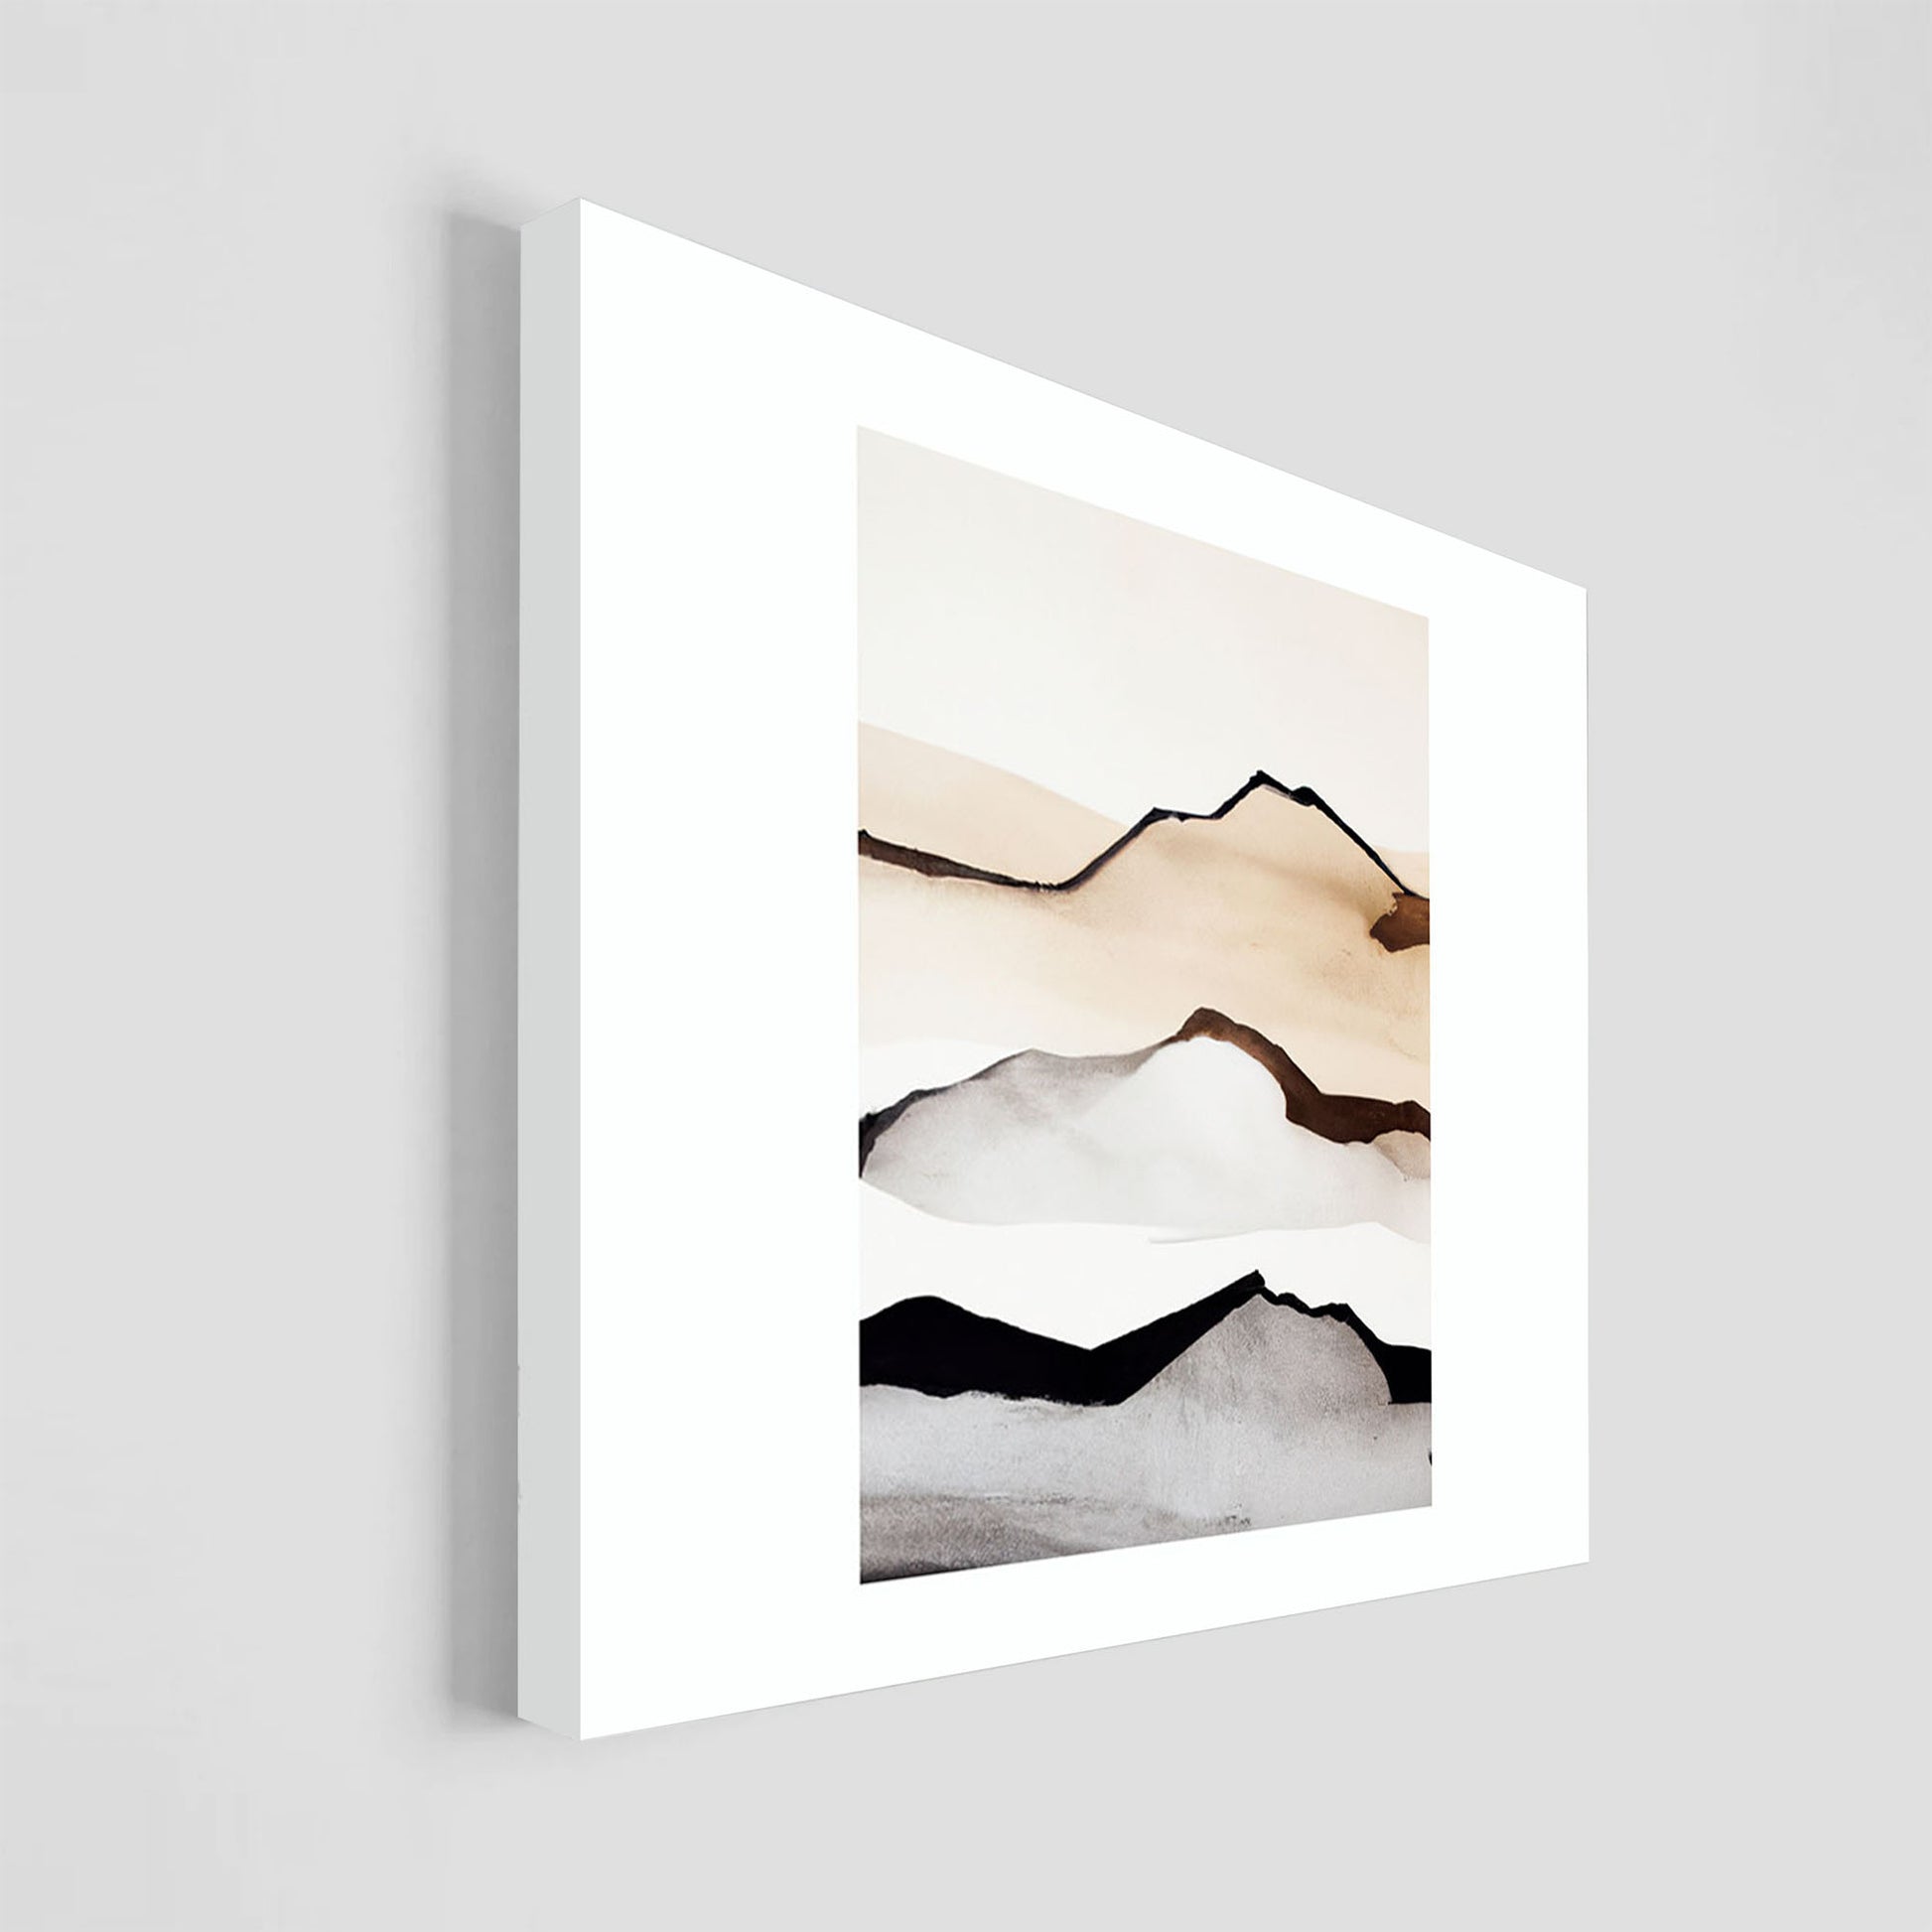 Imagen minimalista de un paisaje de montañas con tonos marrones y negros en un fondo blanco, mostrando líneas simples y elegantes para representar la silueta de las montañas.